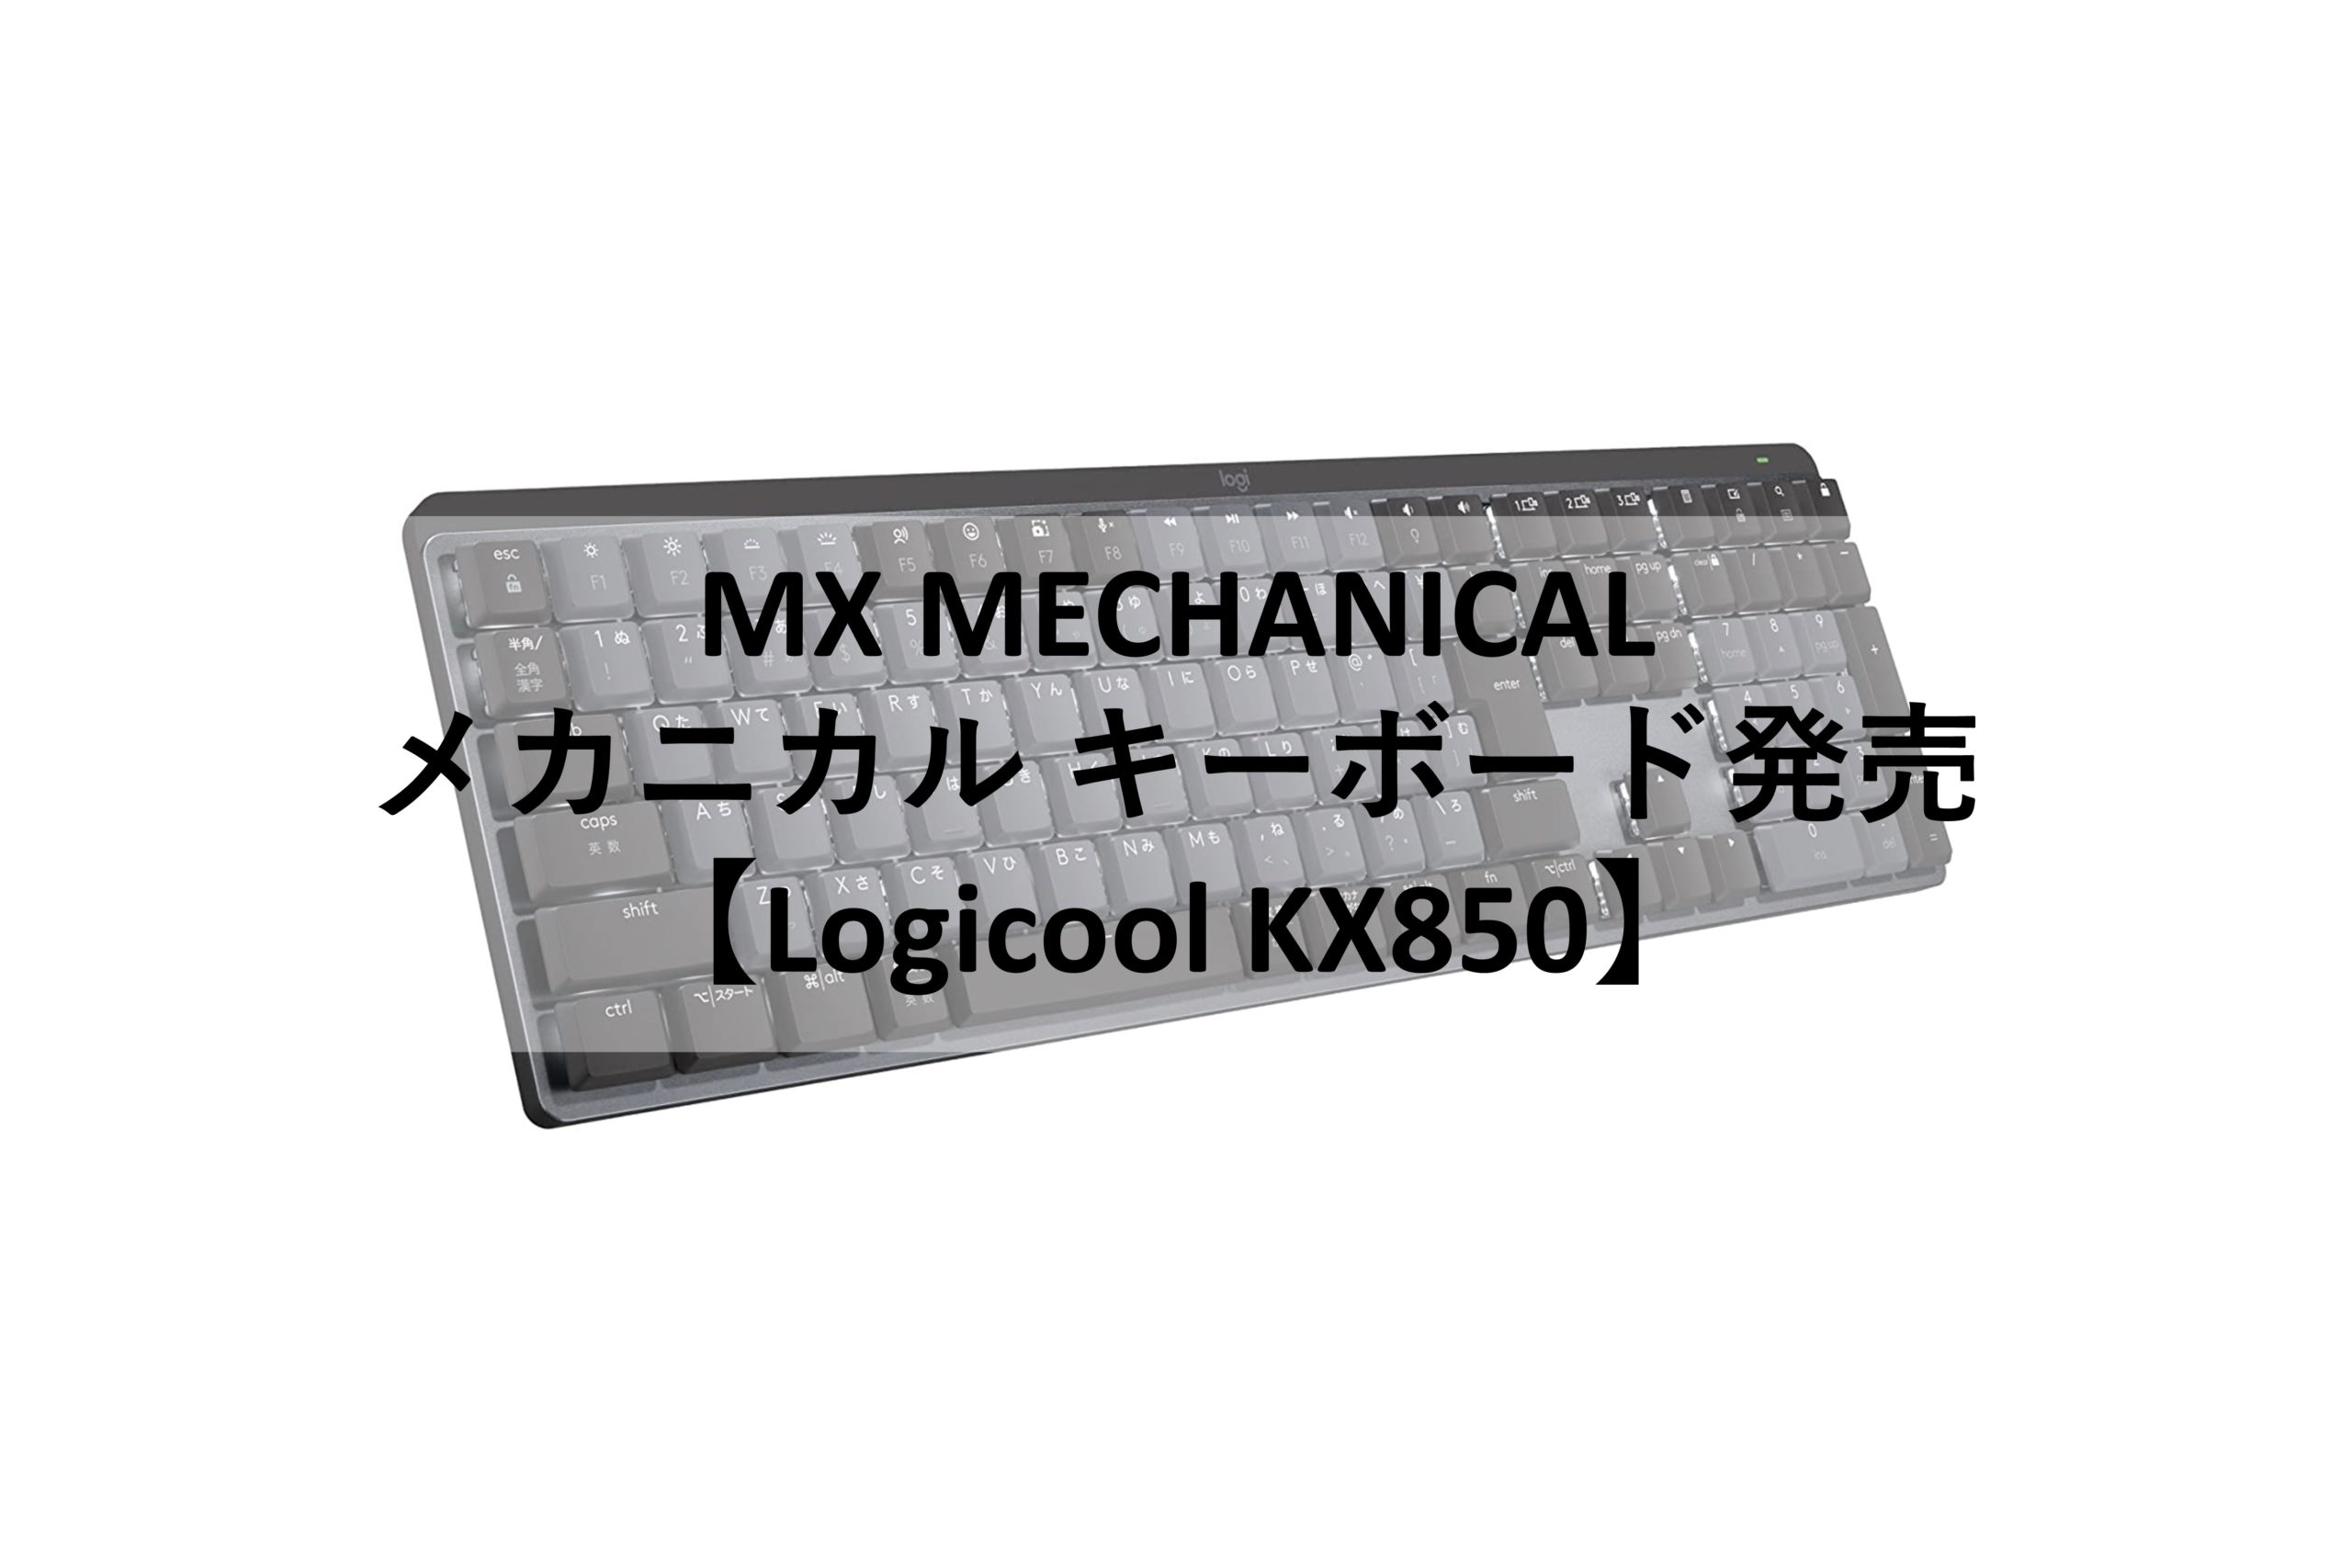 MXシリーズ メカニカルキーボードが発売 【22/6/30発売】 | 計装便覧.com